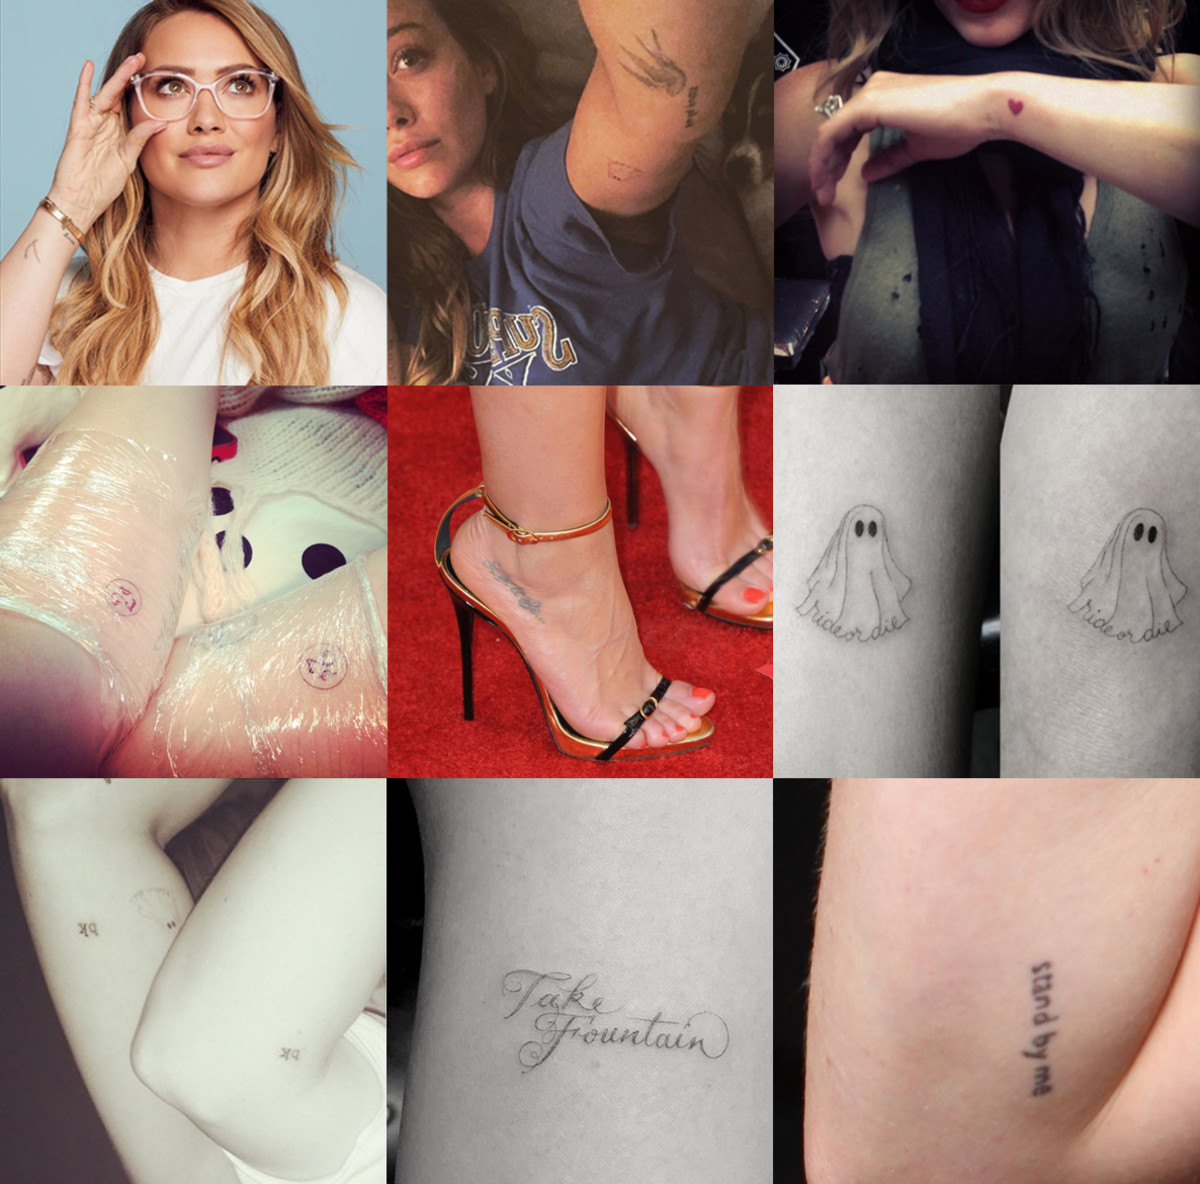 Einige von Duffs Tattoos @hilaryduff auf Instagram.